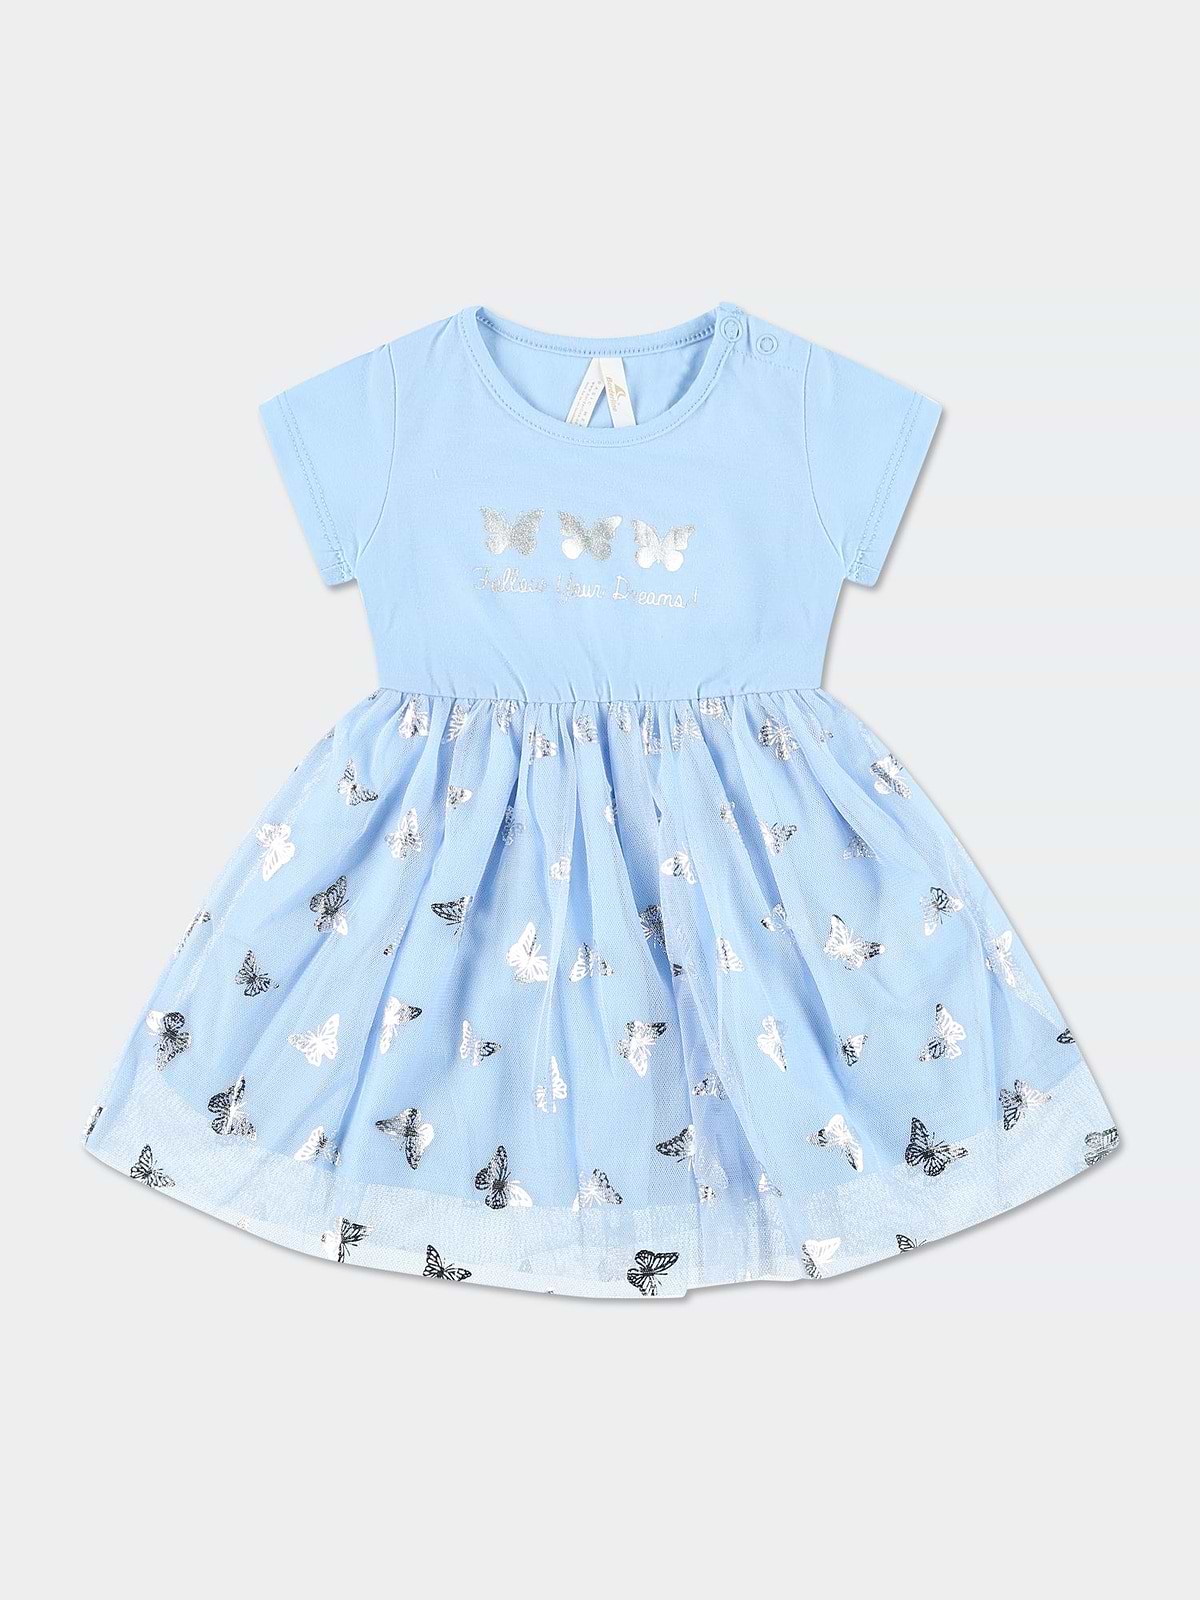 שמלת פרפרים בשילוב טול / תינוקות